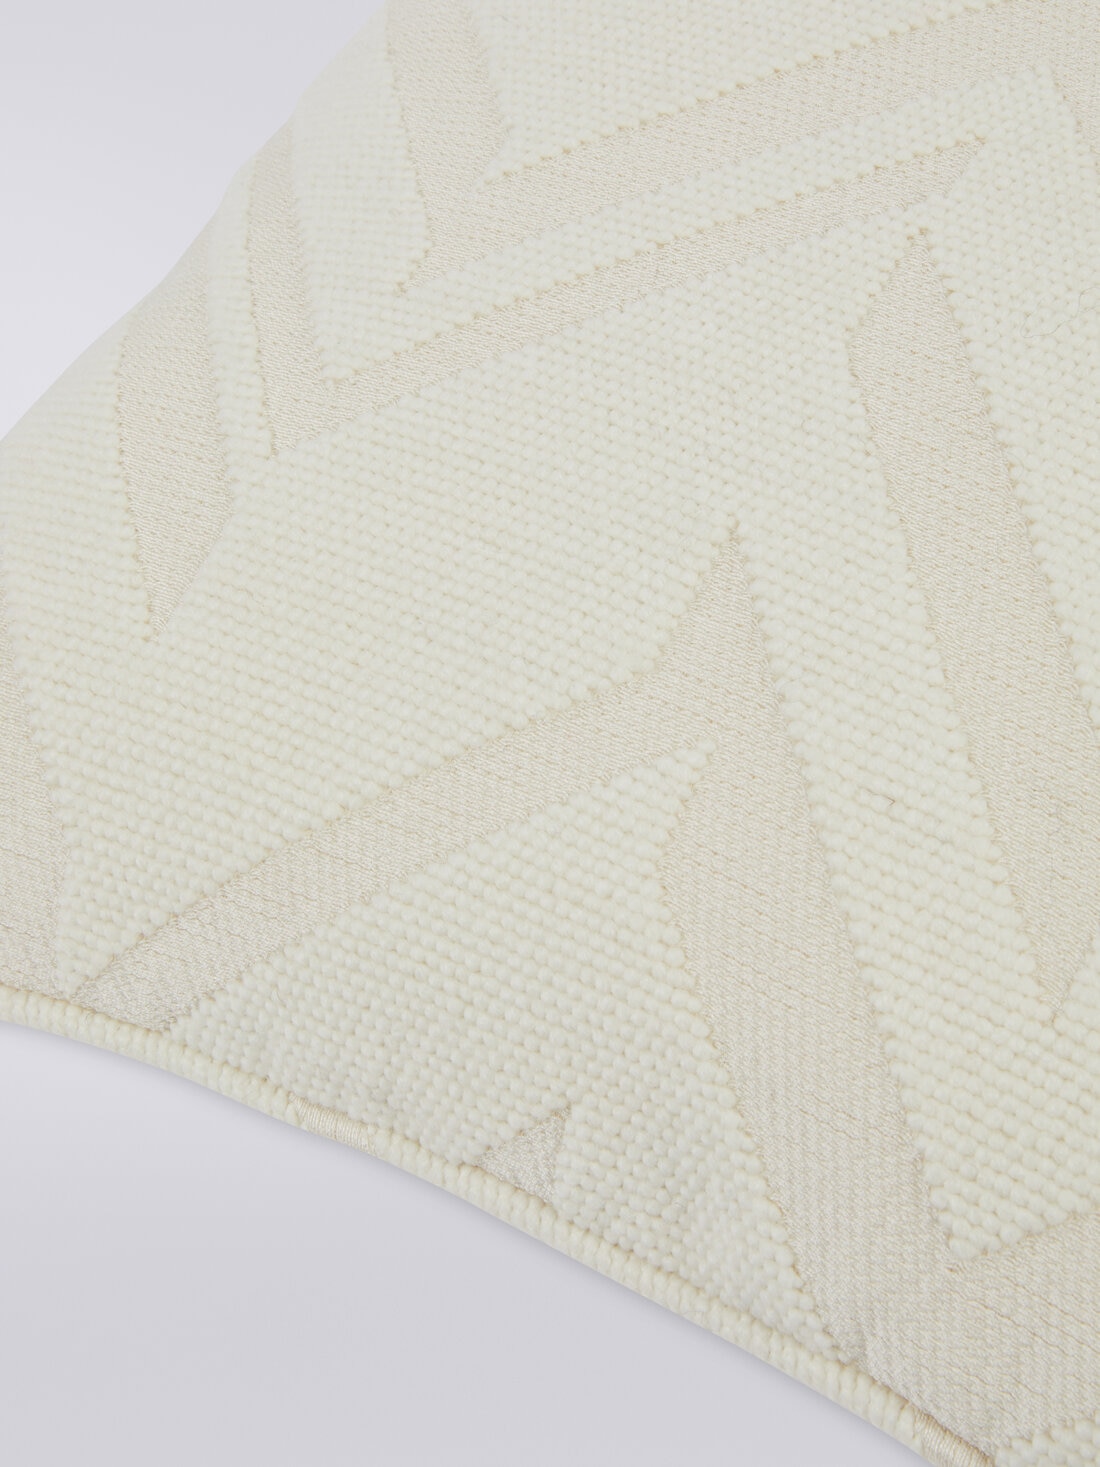 Orme 40x40 cm 3D effect jacquard cushion, White  - 8051575837364 - 2